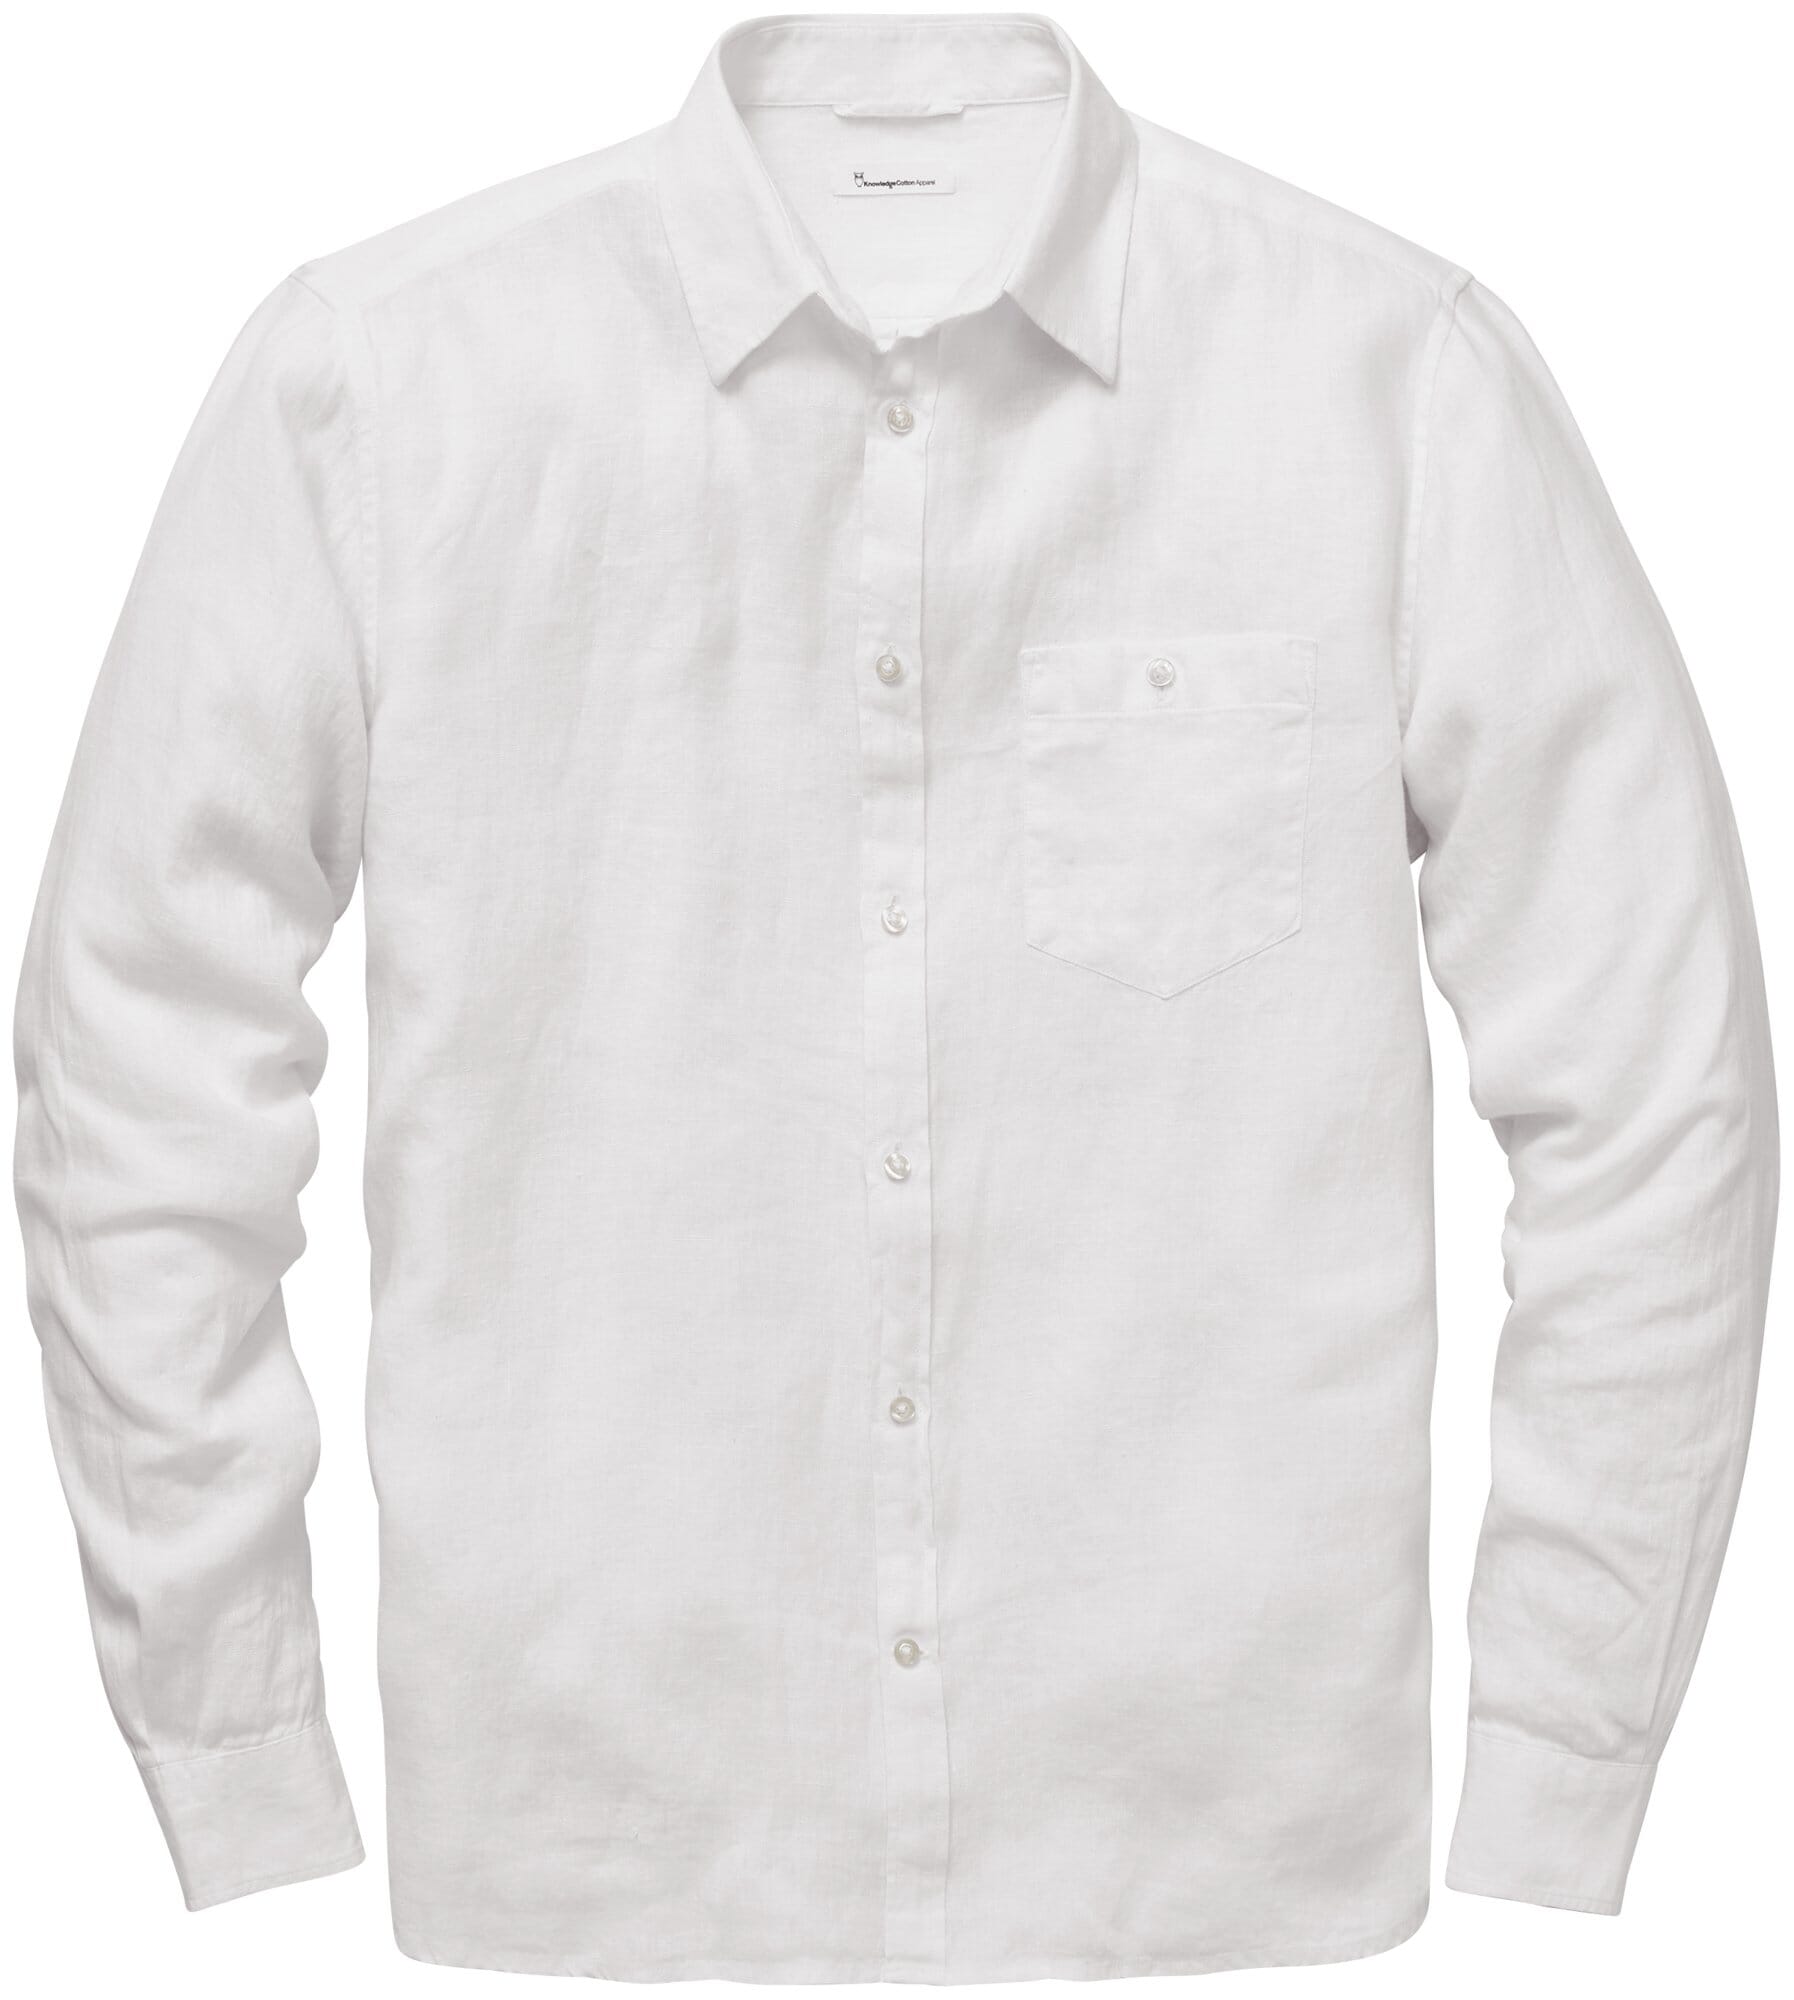 Kleding Herenkleding Overhemden & T-shirts Overhemden Wit traditioneel linnen Guayabera overhemd voor mannen 